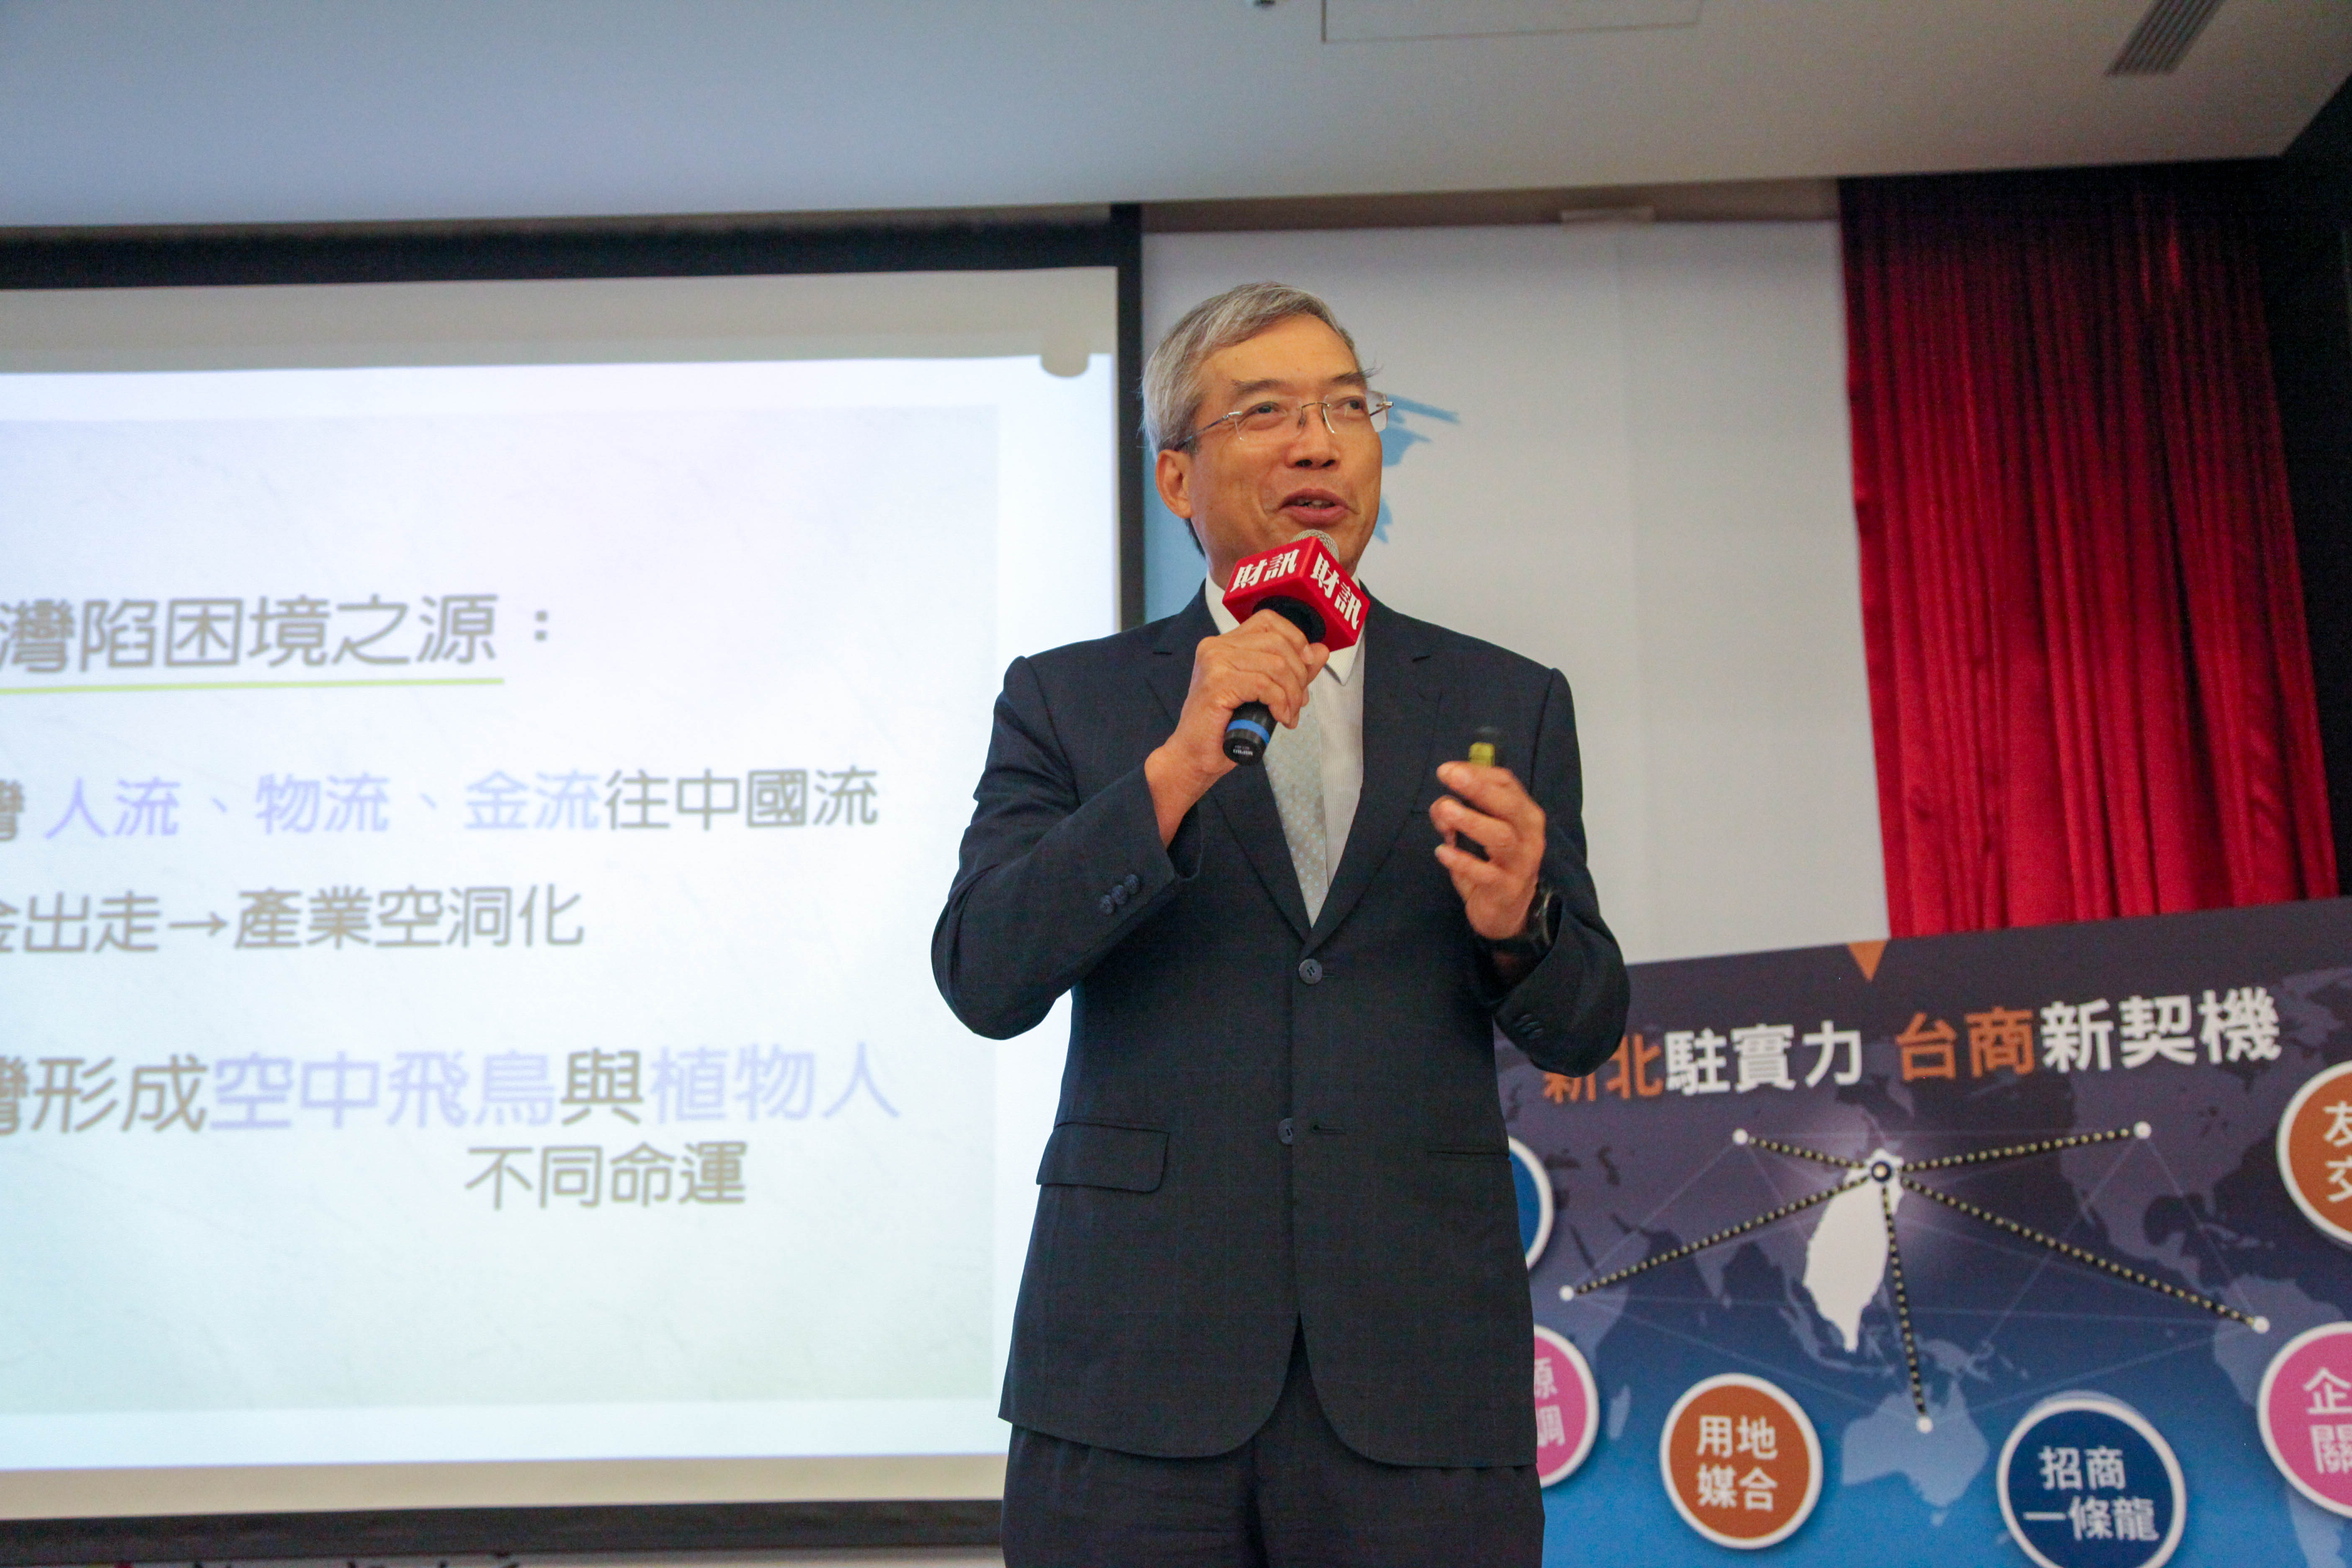 財訊週刊謝金河社長於專題演講中表示，台灣正在轉運中，西進高峰已過，90年代以來往中國大陸的人流、物流、金流線在都將加速回流台灣。